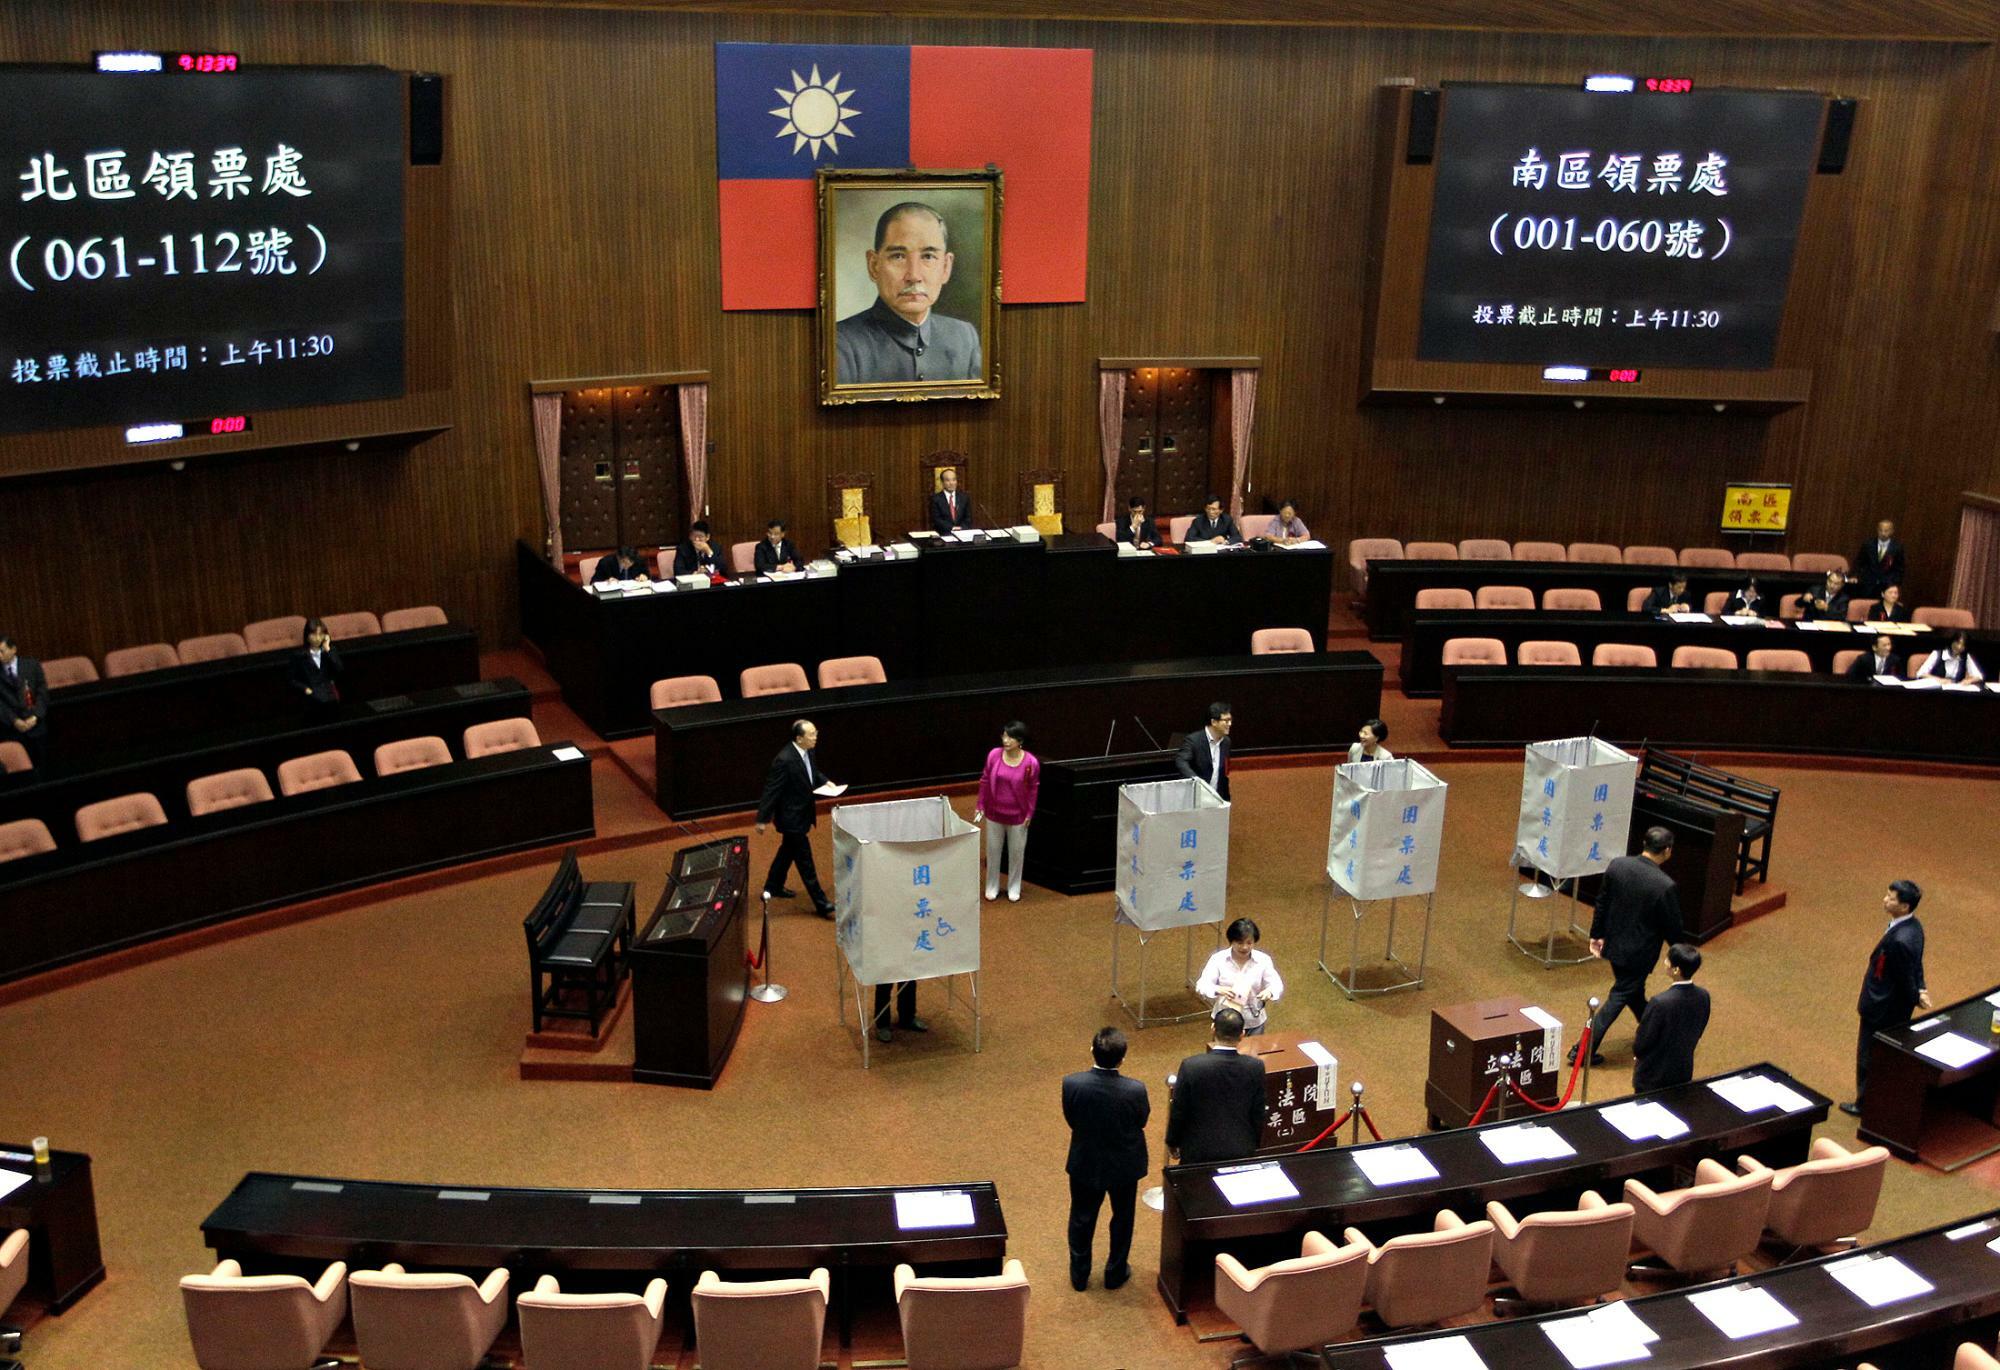 【資料】台湾立法院の議場（2013.10.15）。議会にあたる立法院は一院制で、立法権を握り、首相を選出する権限をもつ。今回の選挙で台湾では初めて総統と首相の党派が異なる双頭制が生まれる可能性が高い。